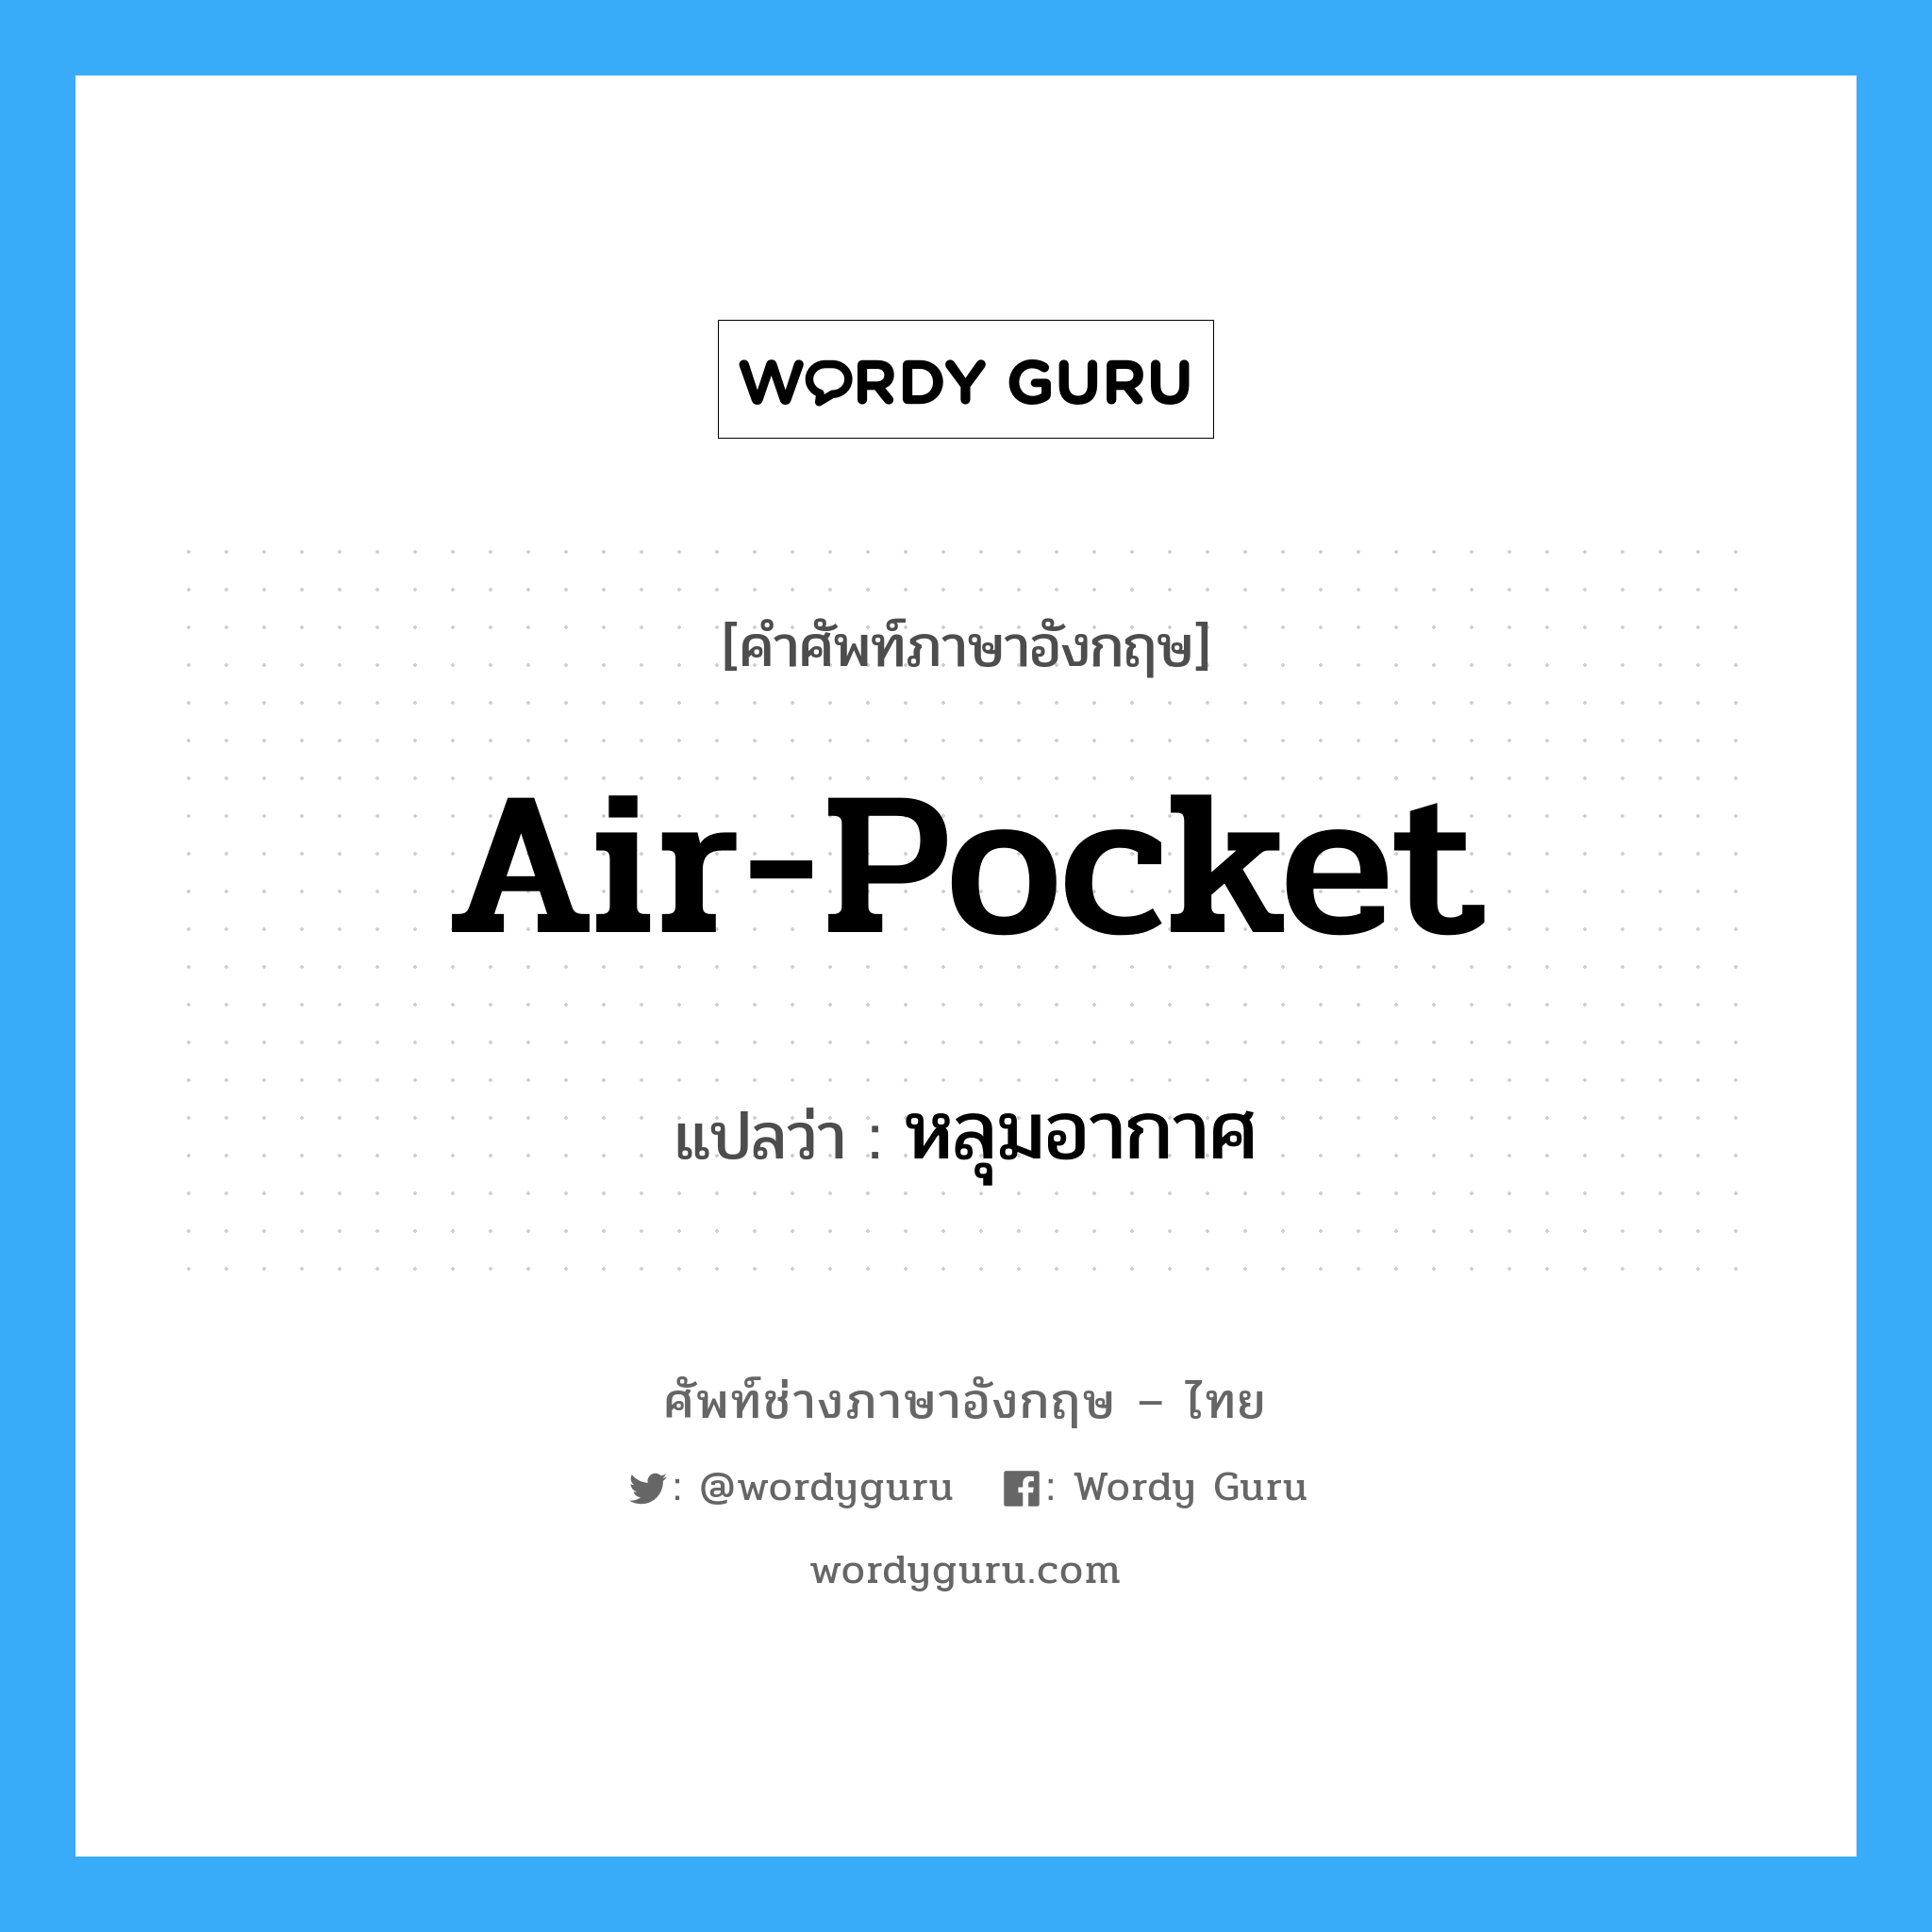 air pocket แปลว่า?, คำศัพท์ช่างภาษาอังกฤษ - ไทย air-pocket คำศัพท์ภาษาอังกฤษ air-pocket แปลว่า หลุมอากาศ